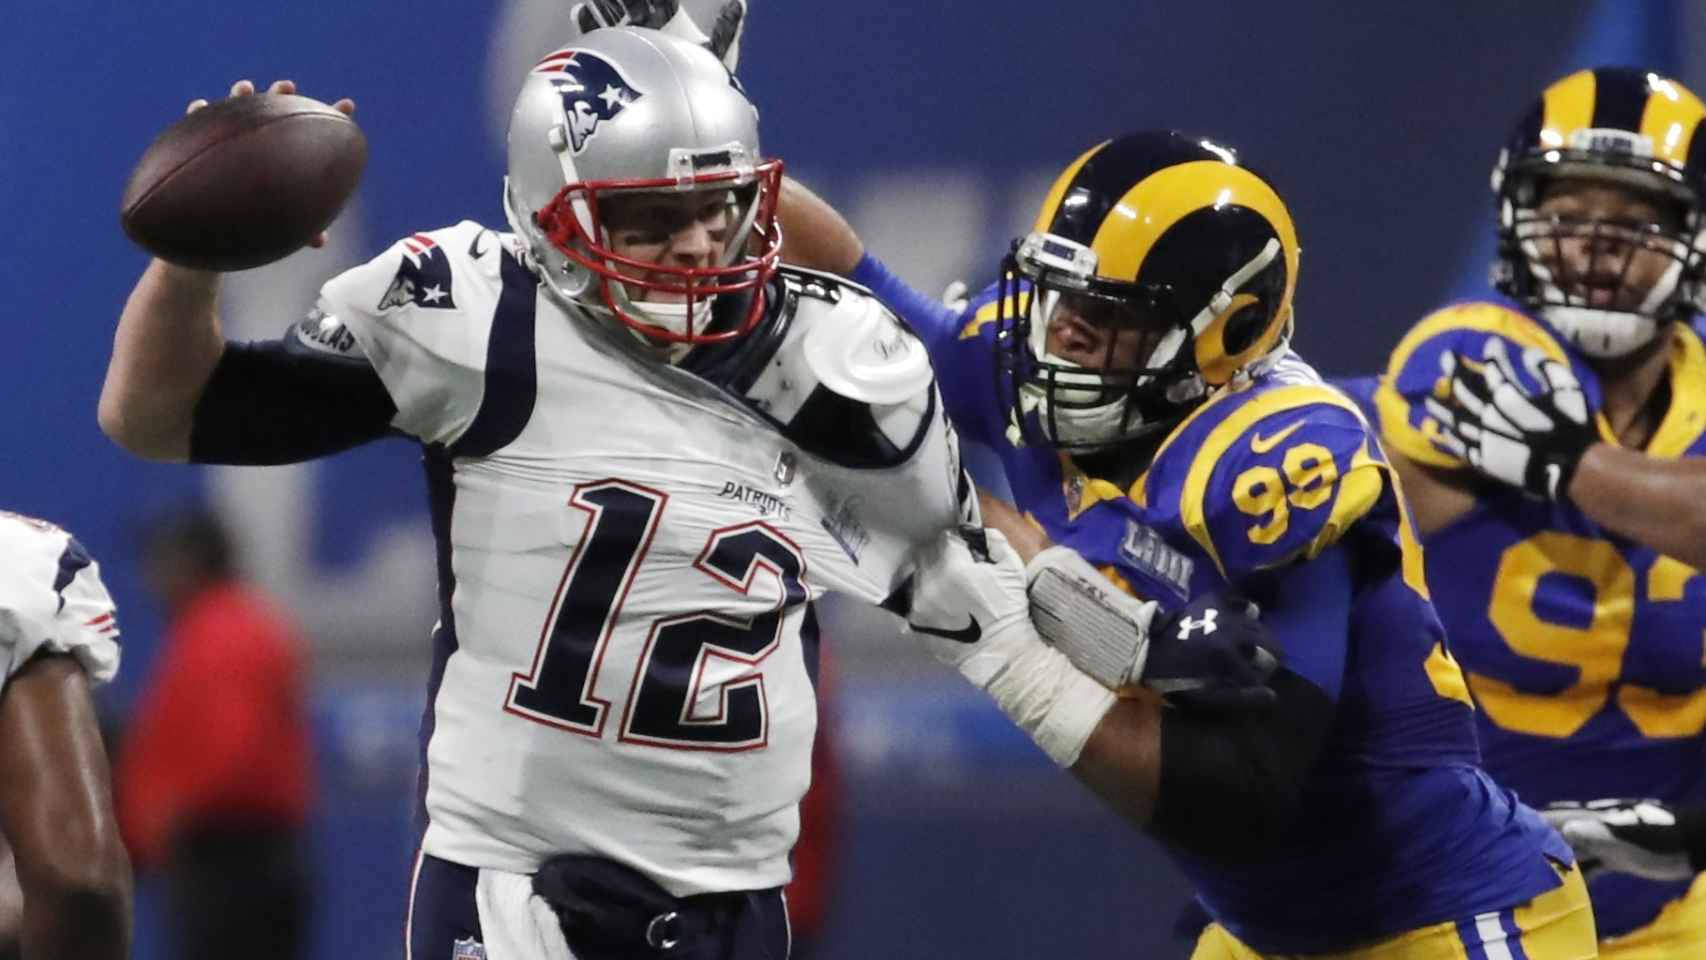 Siga la Super Bowl 2019 en directo: Los Angeles Rams - New England Patriots